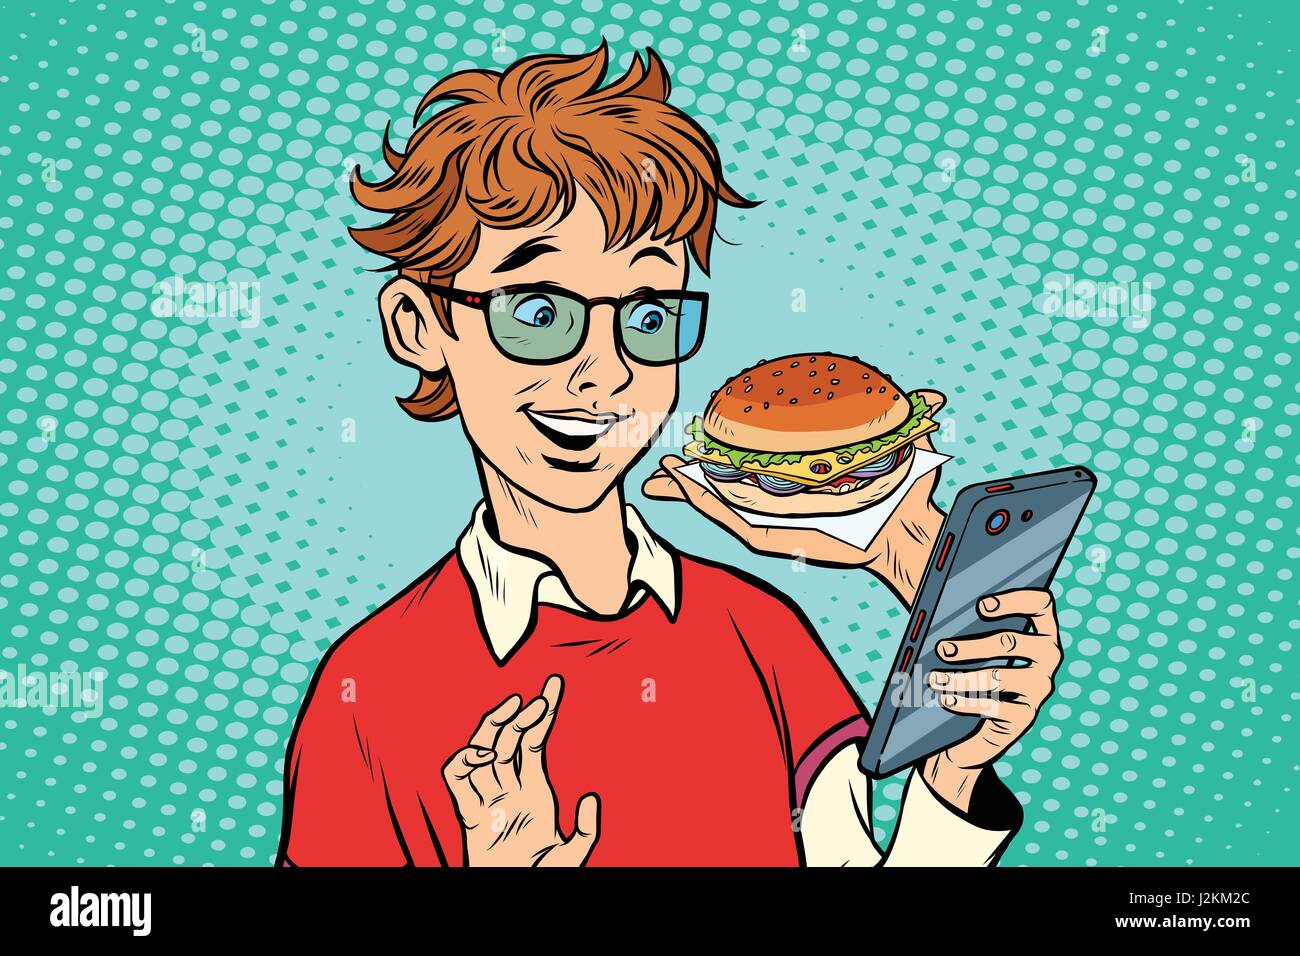 La distribution de produits alimentaires en ligne, un adolescent utilise une application pour smartphone Illustration de Vecteur